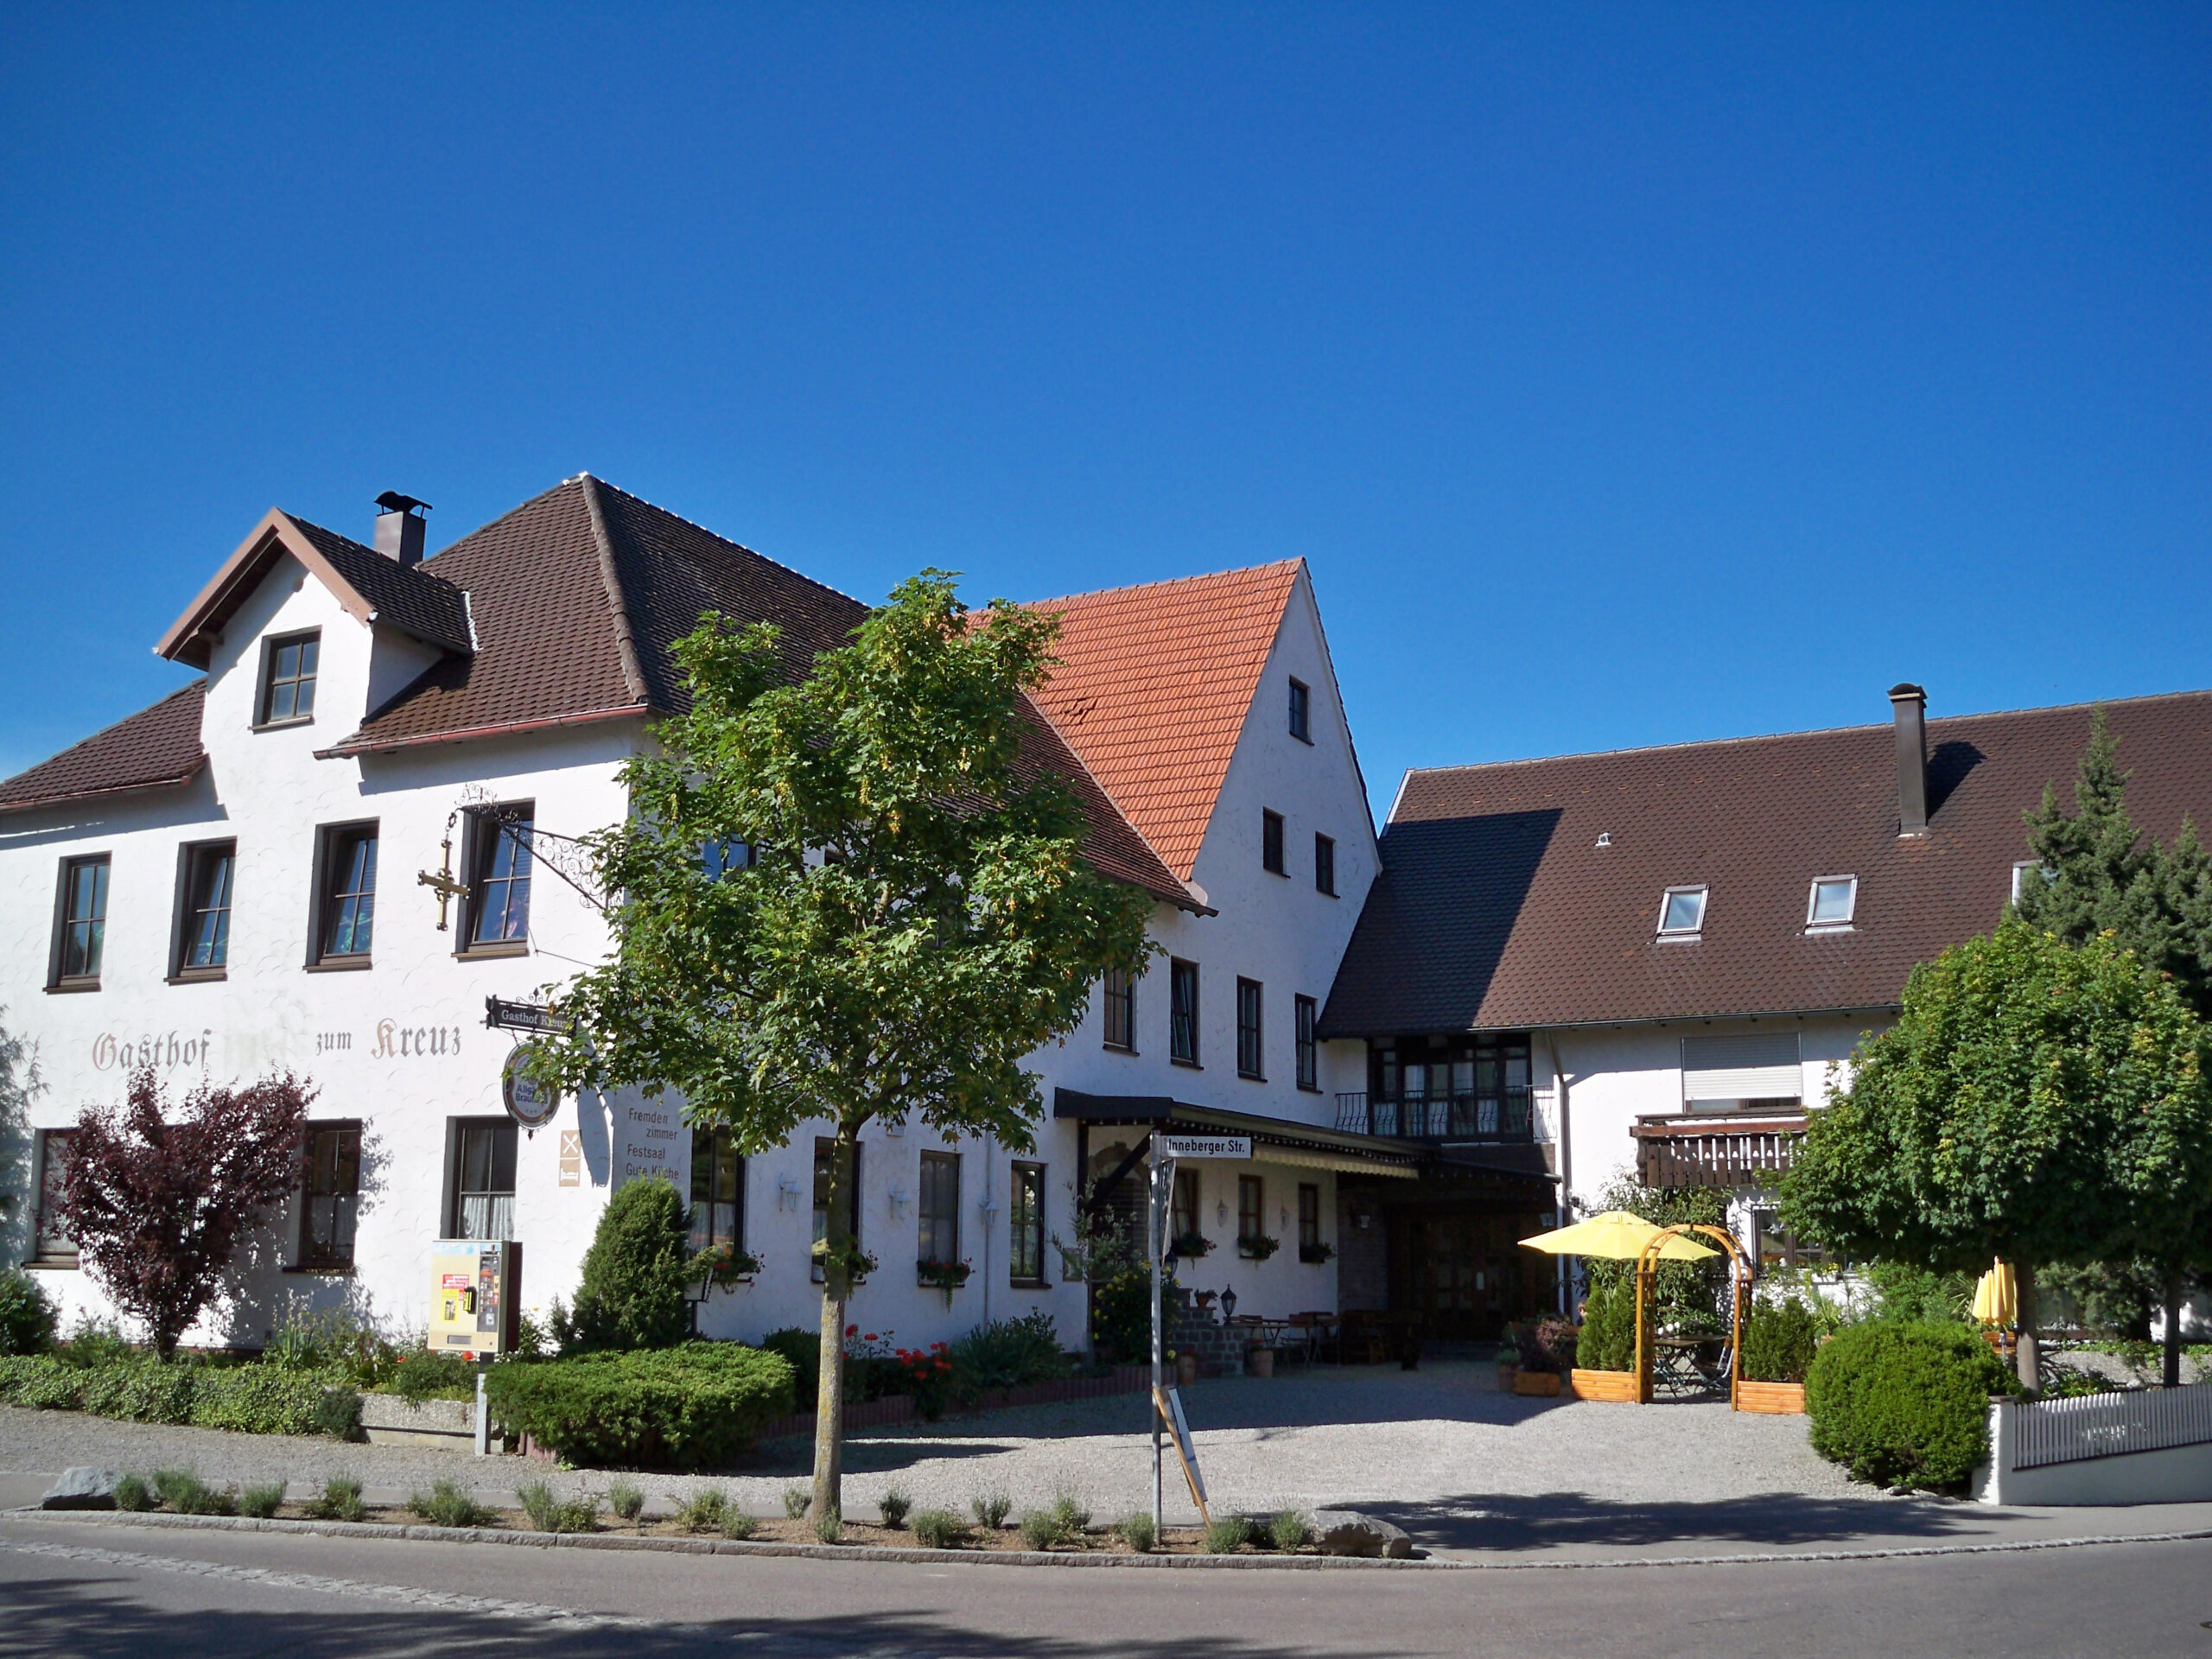 Gasthof & Gästezimmer zum Kreuz in Egg bei Buxheim